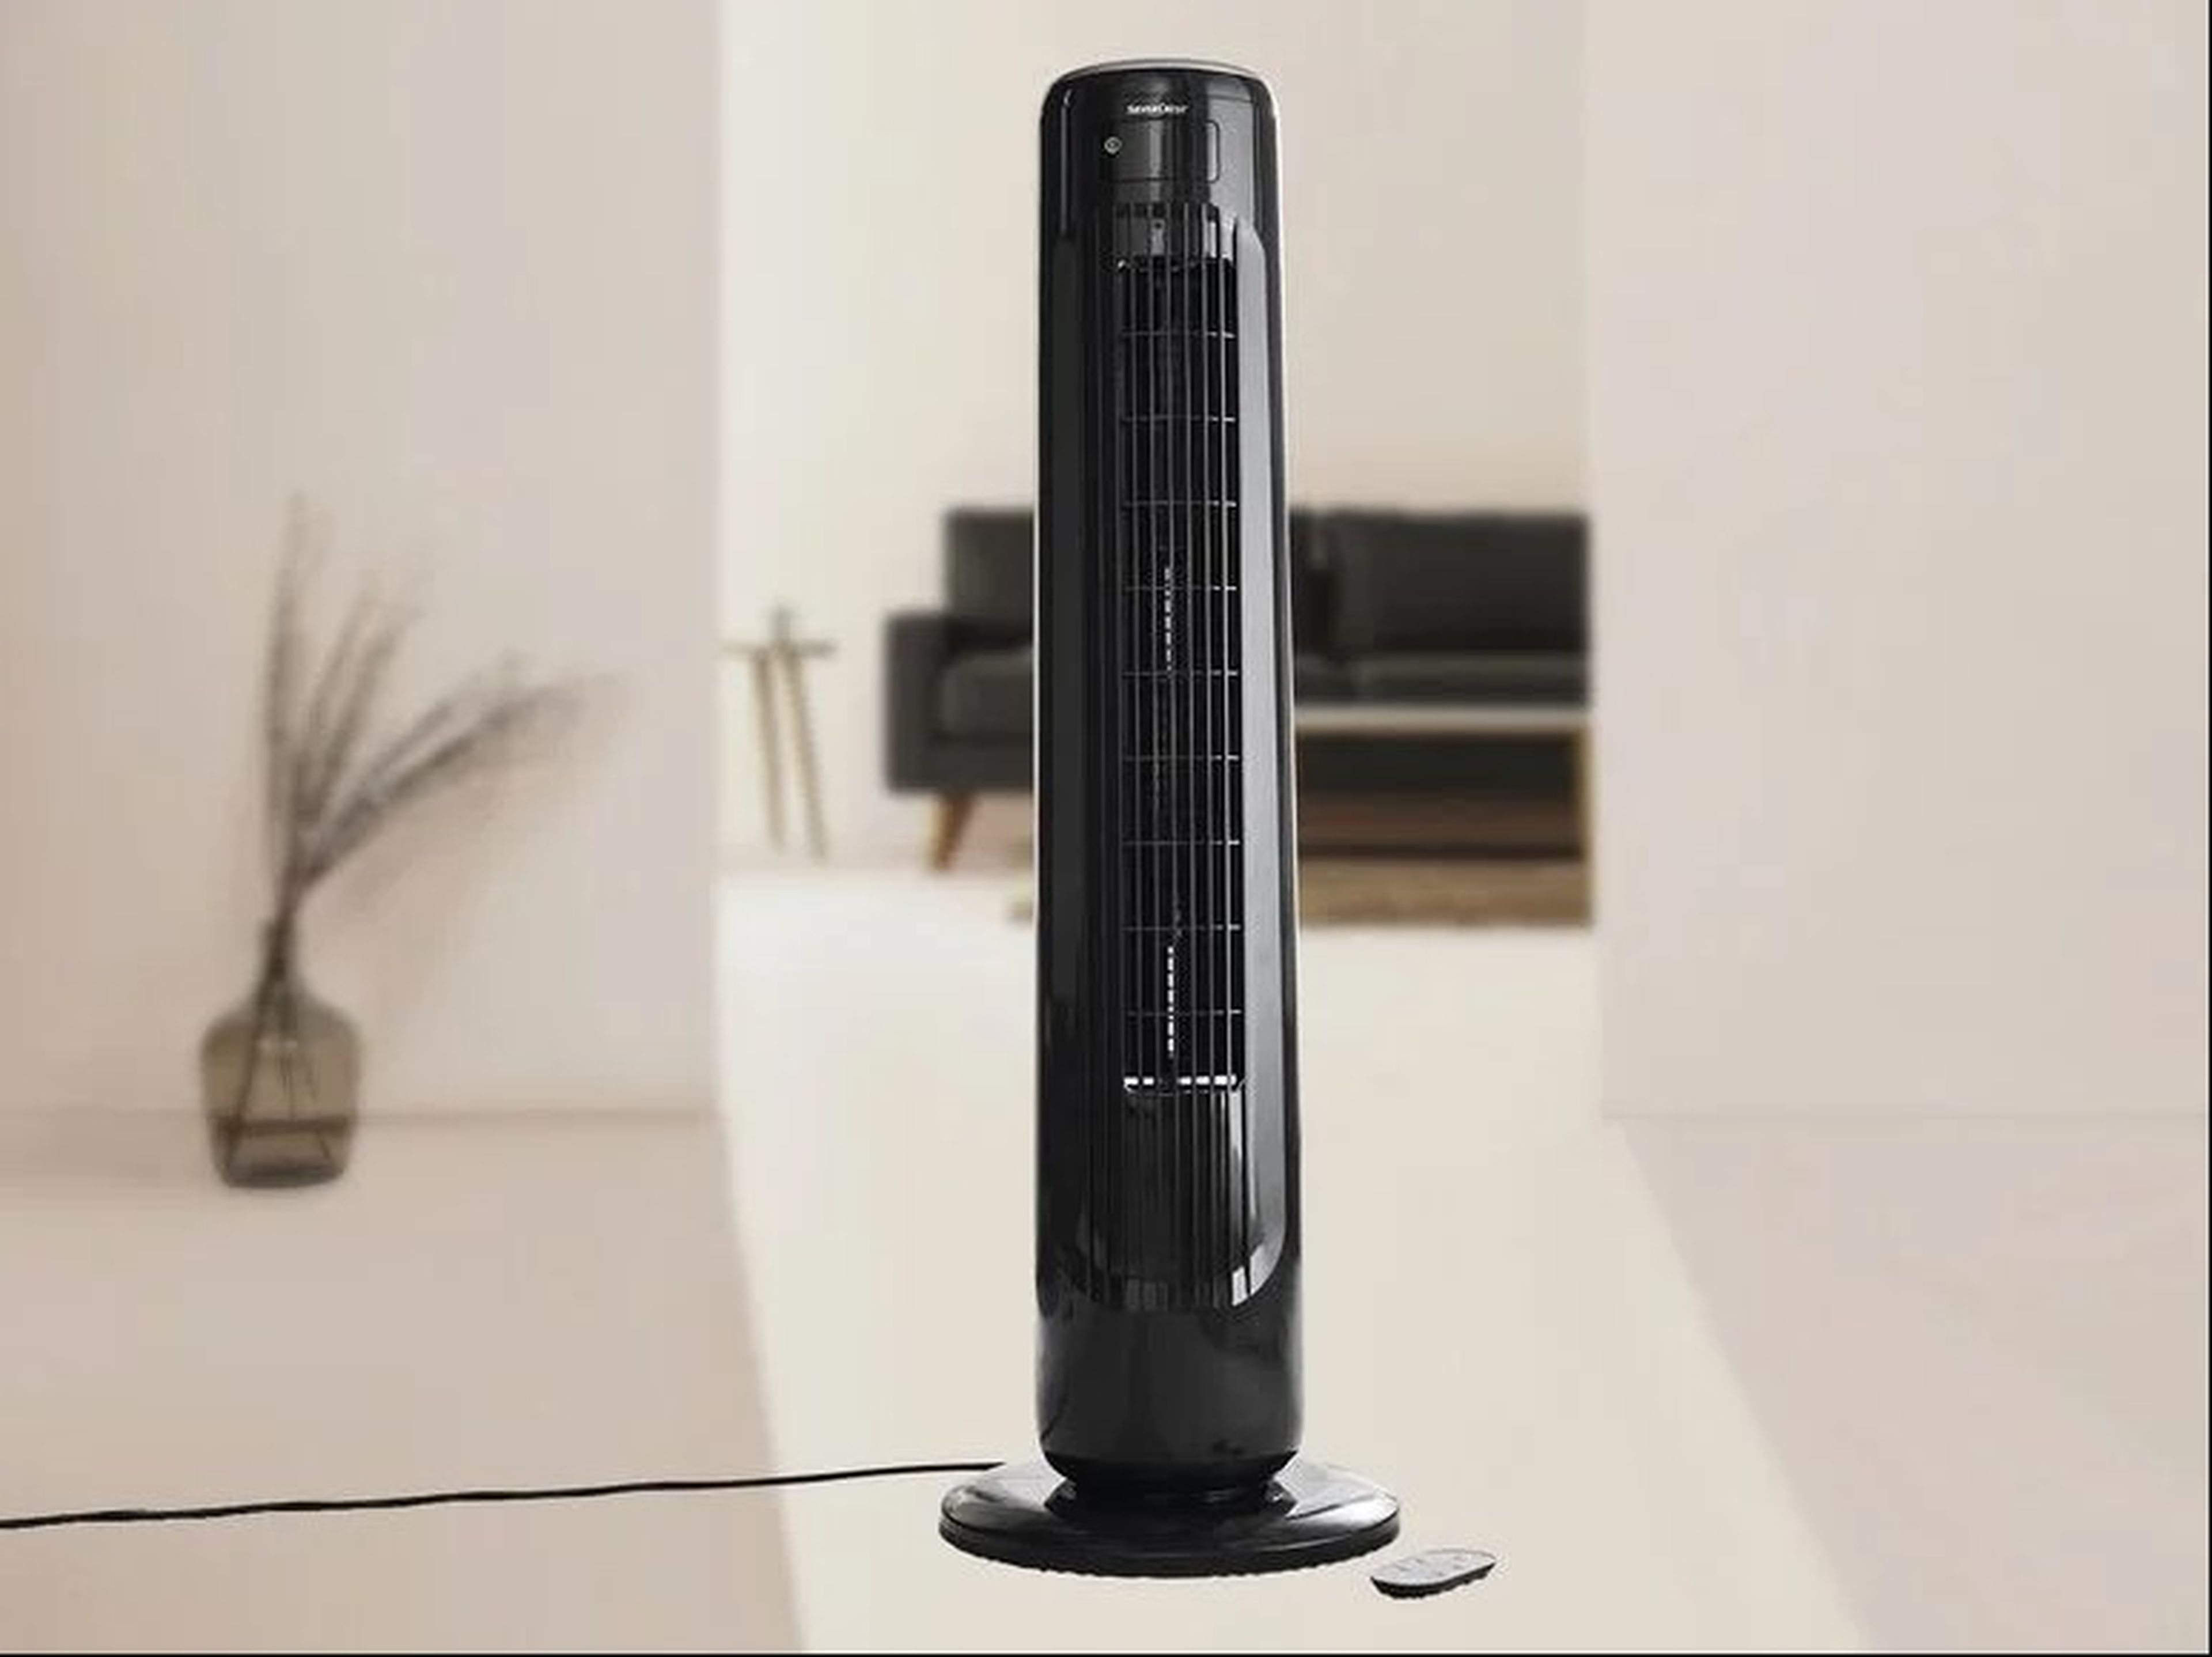 Lidl ofrece la forma de superar el calor del verano: un ventilador de torre con pantalla LCD, oscilación y 3 velocidades